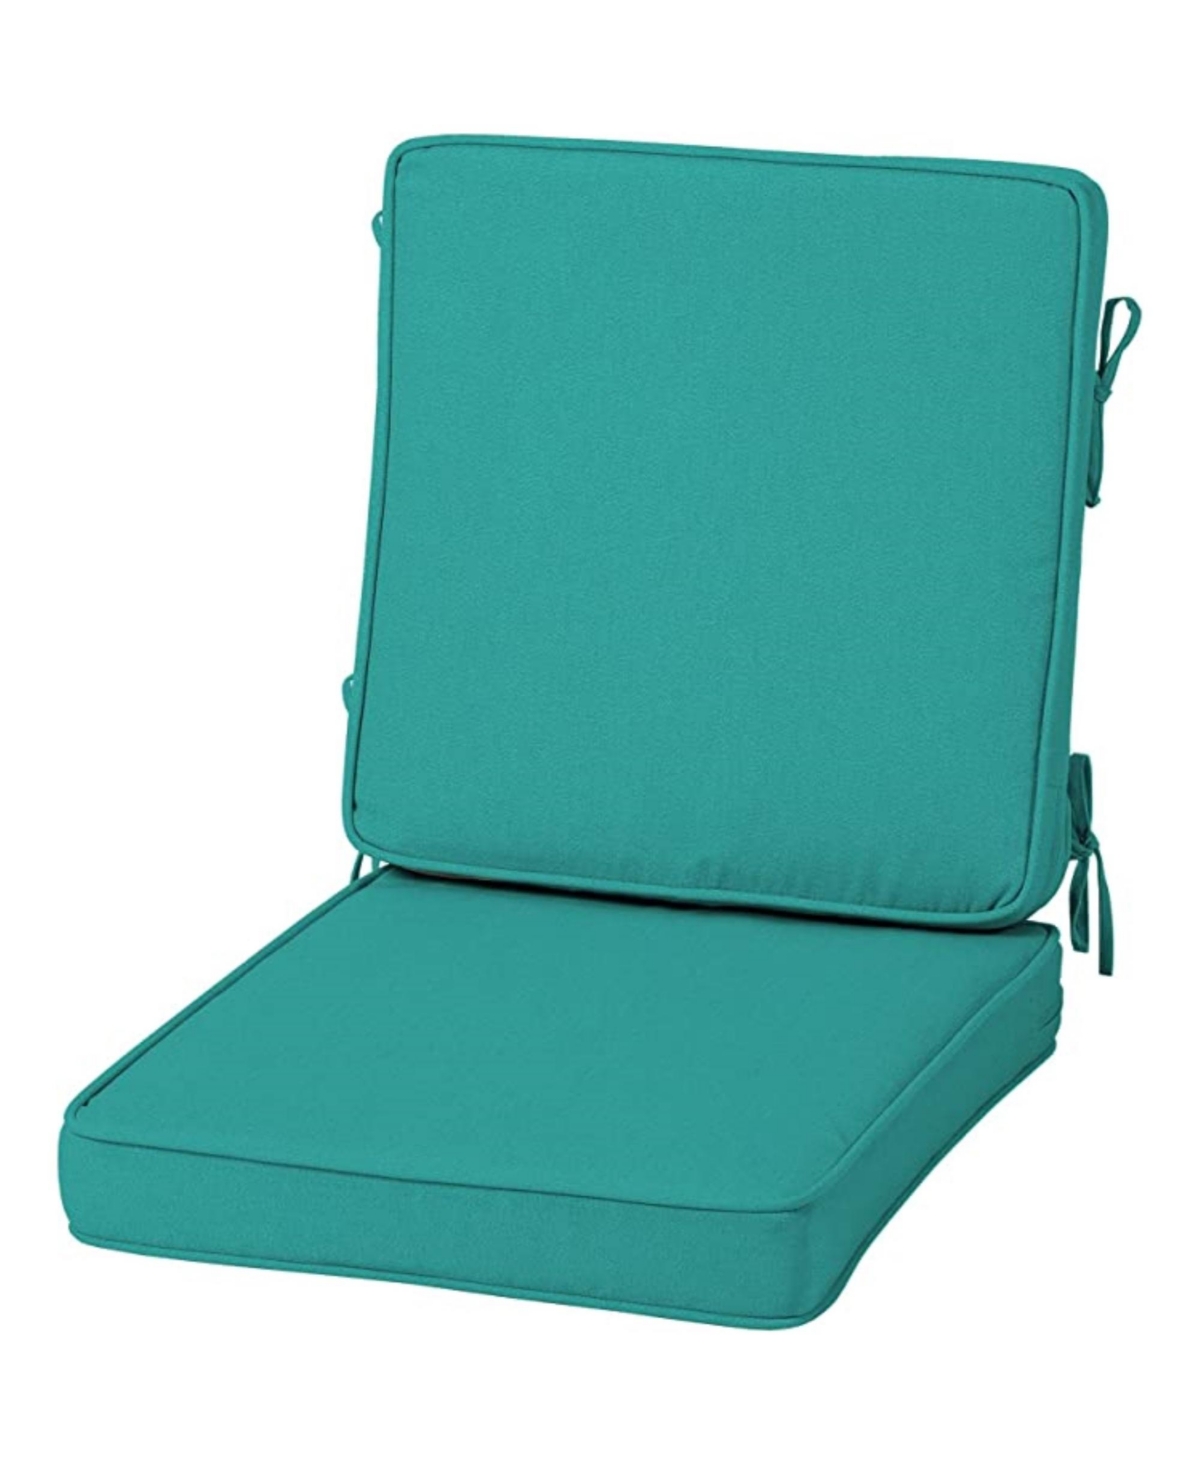 Acrylic Foam Chair Cushion 20In x 20In Aqua - Blue